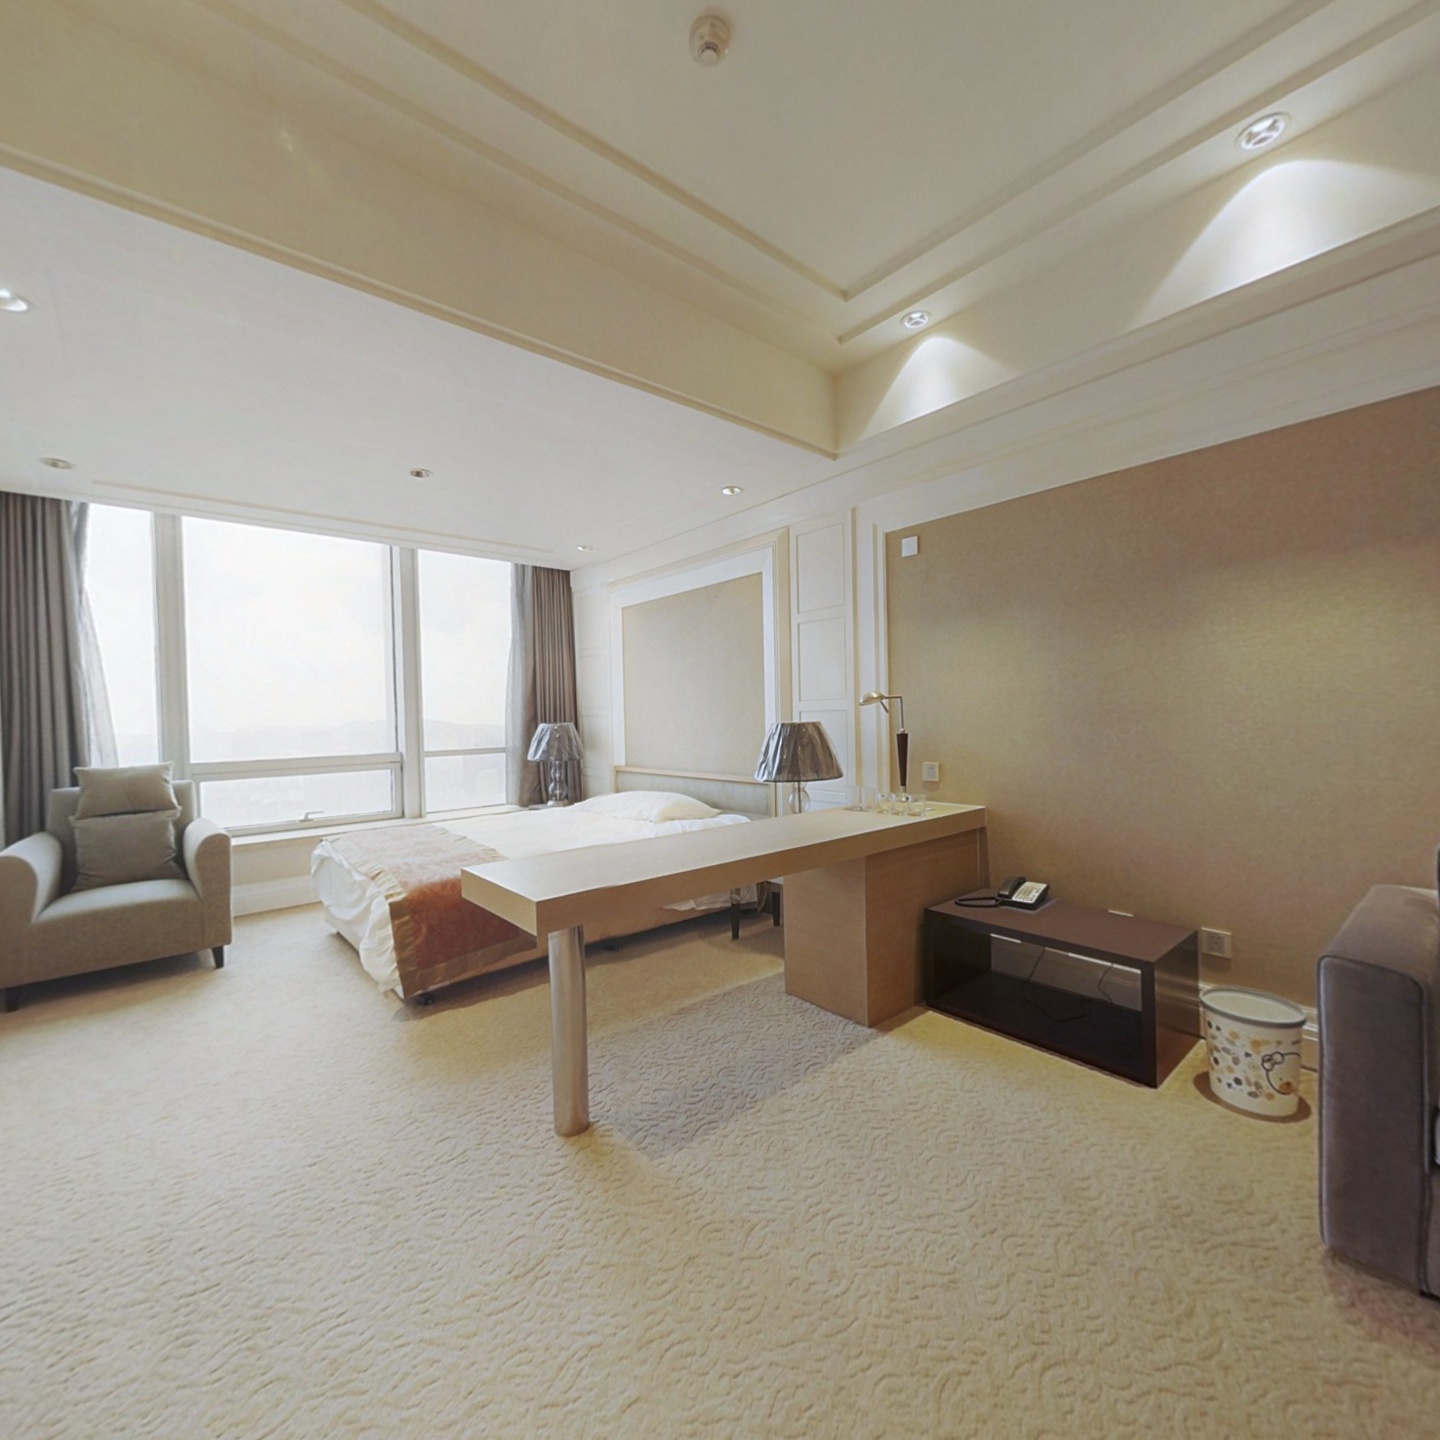 凯燕环球是集德国五星酒店商务酒店公寓品质生活享受